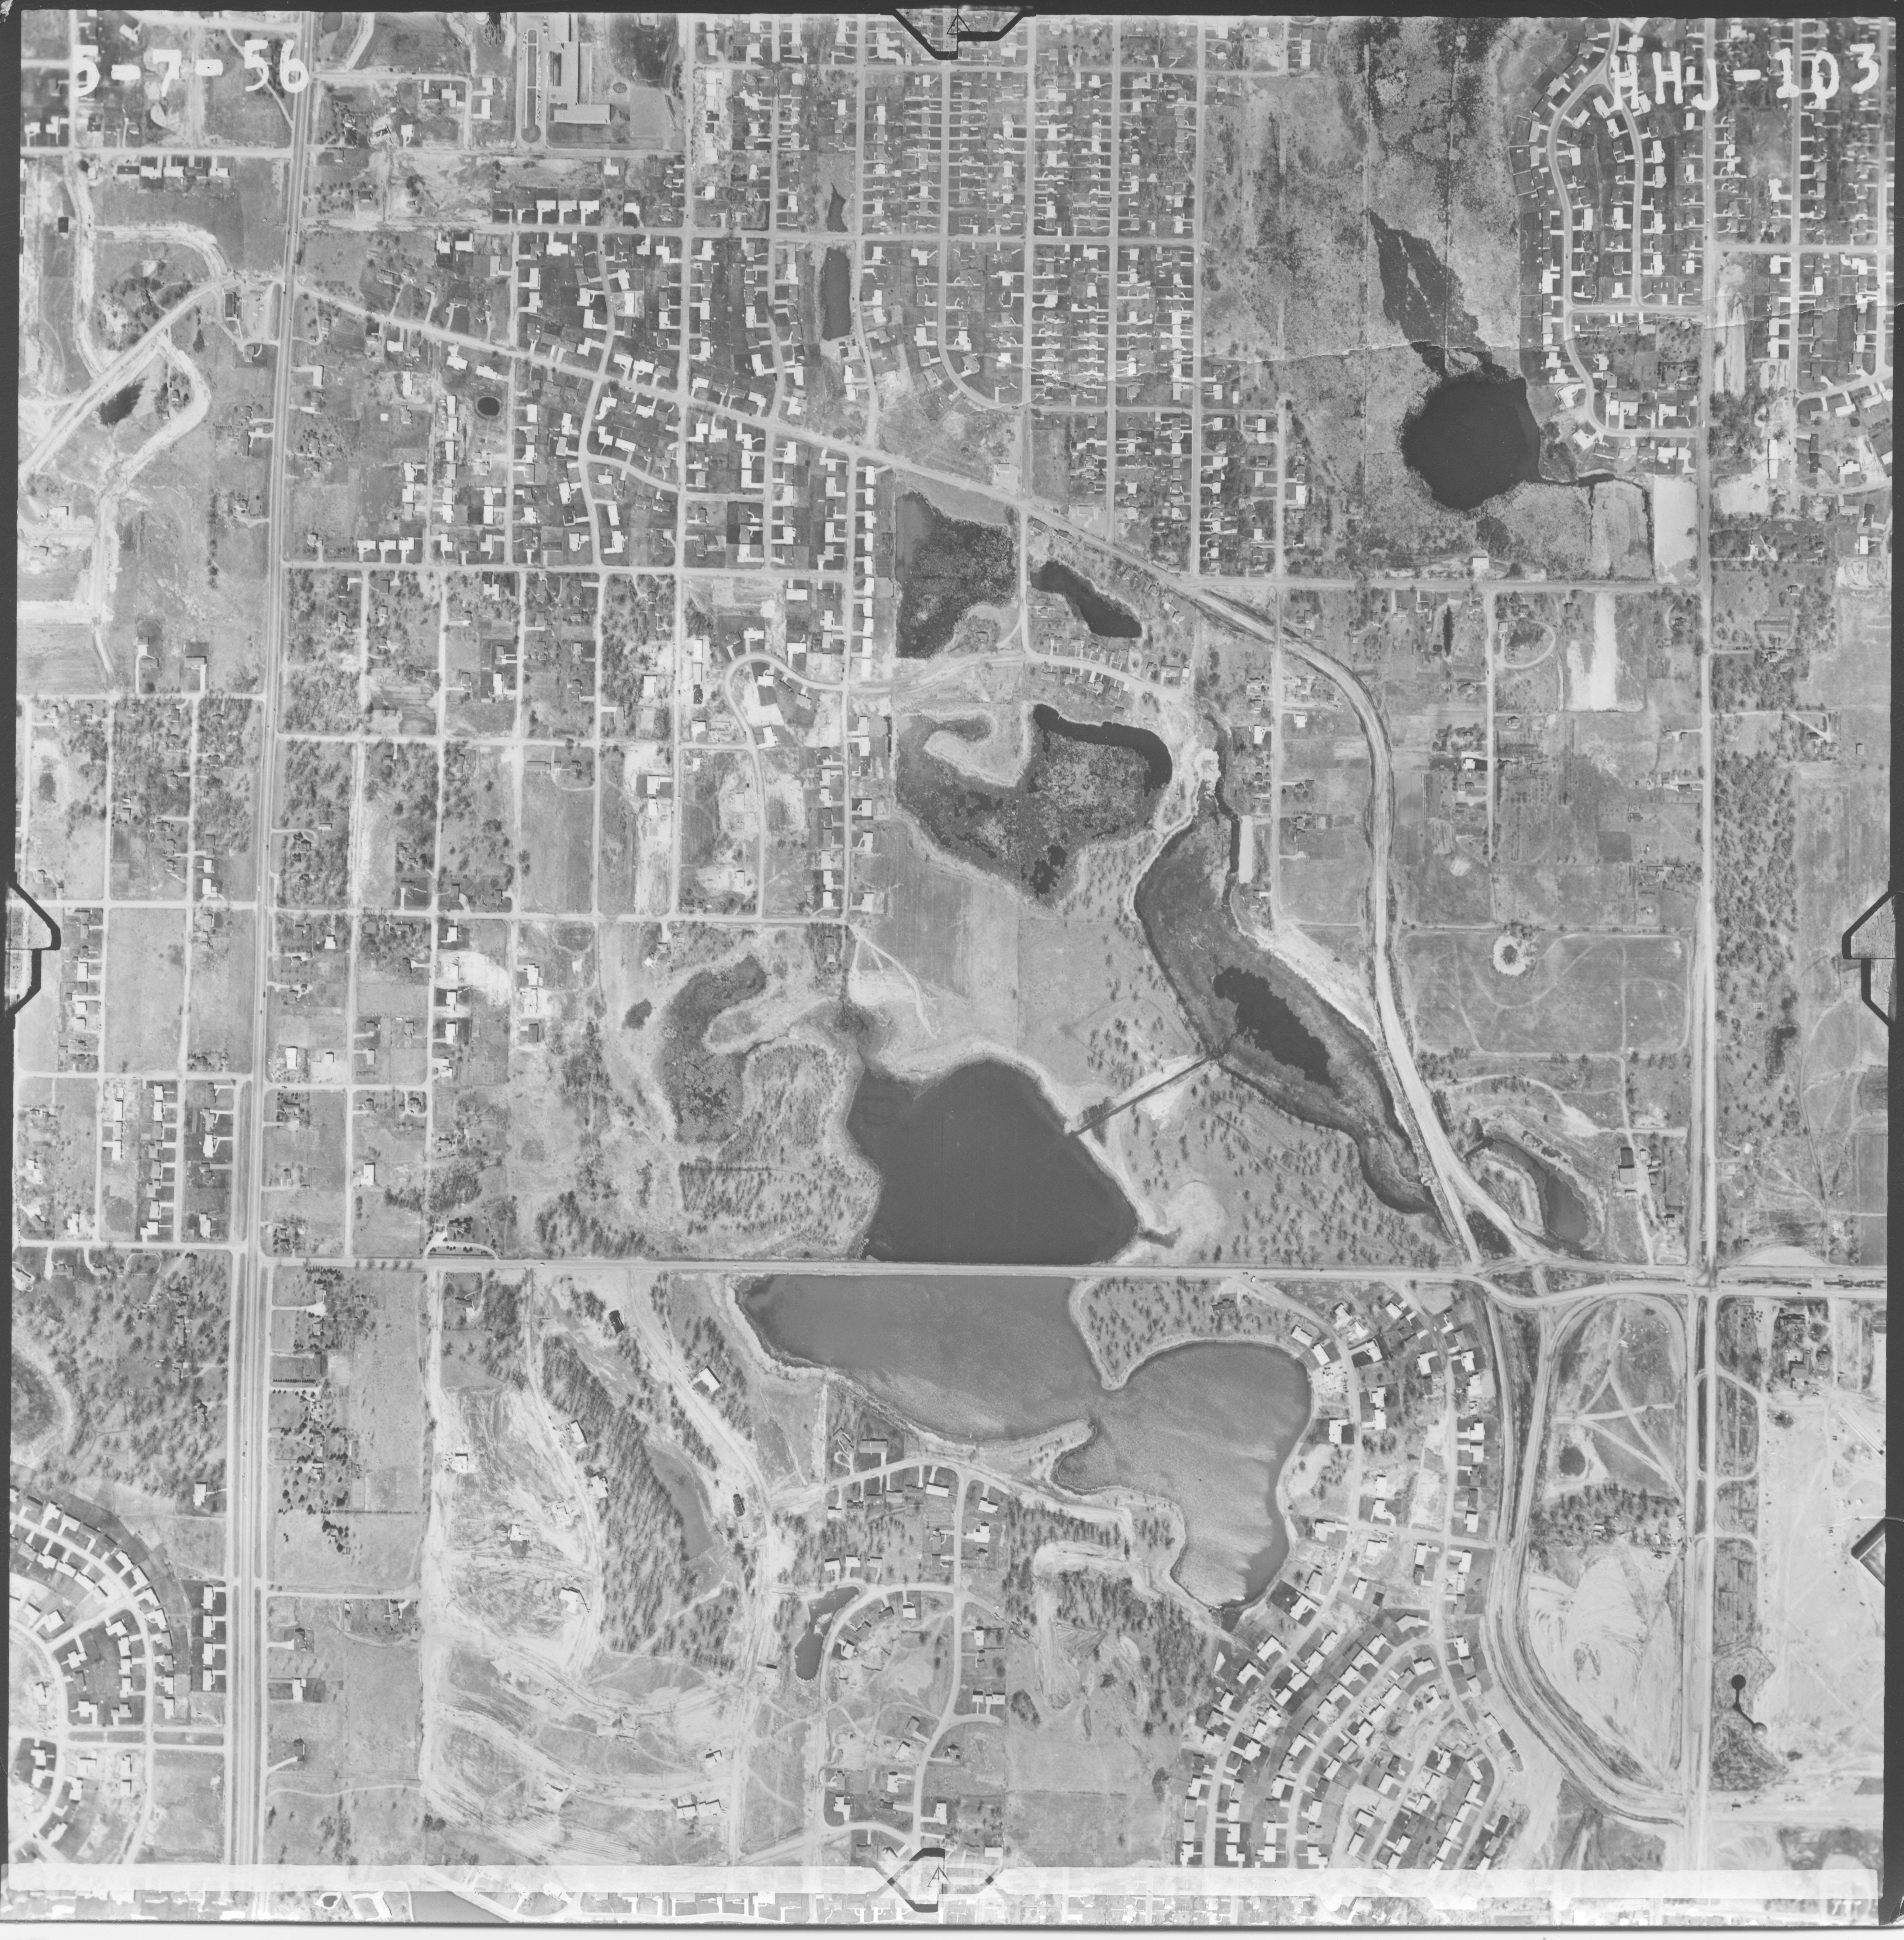 1956 aerial.jpg